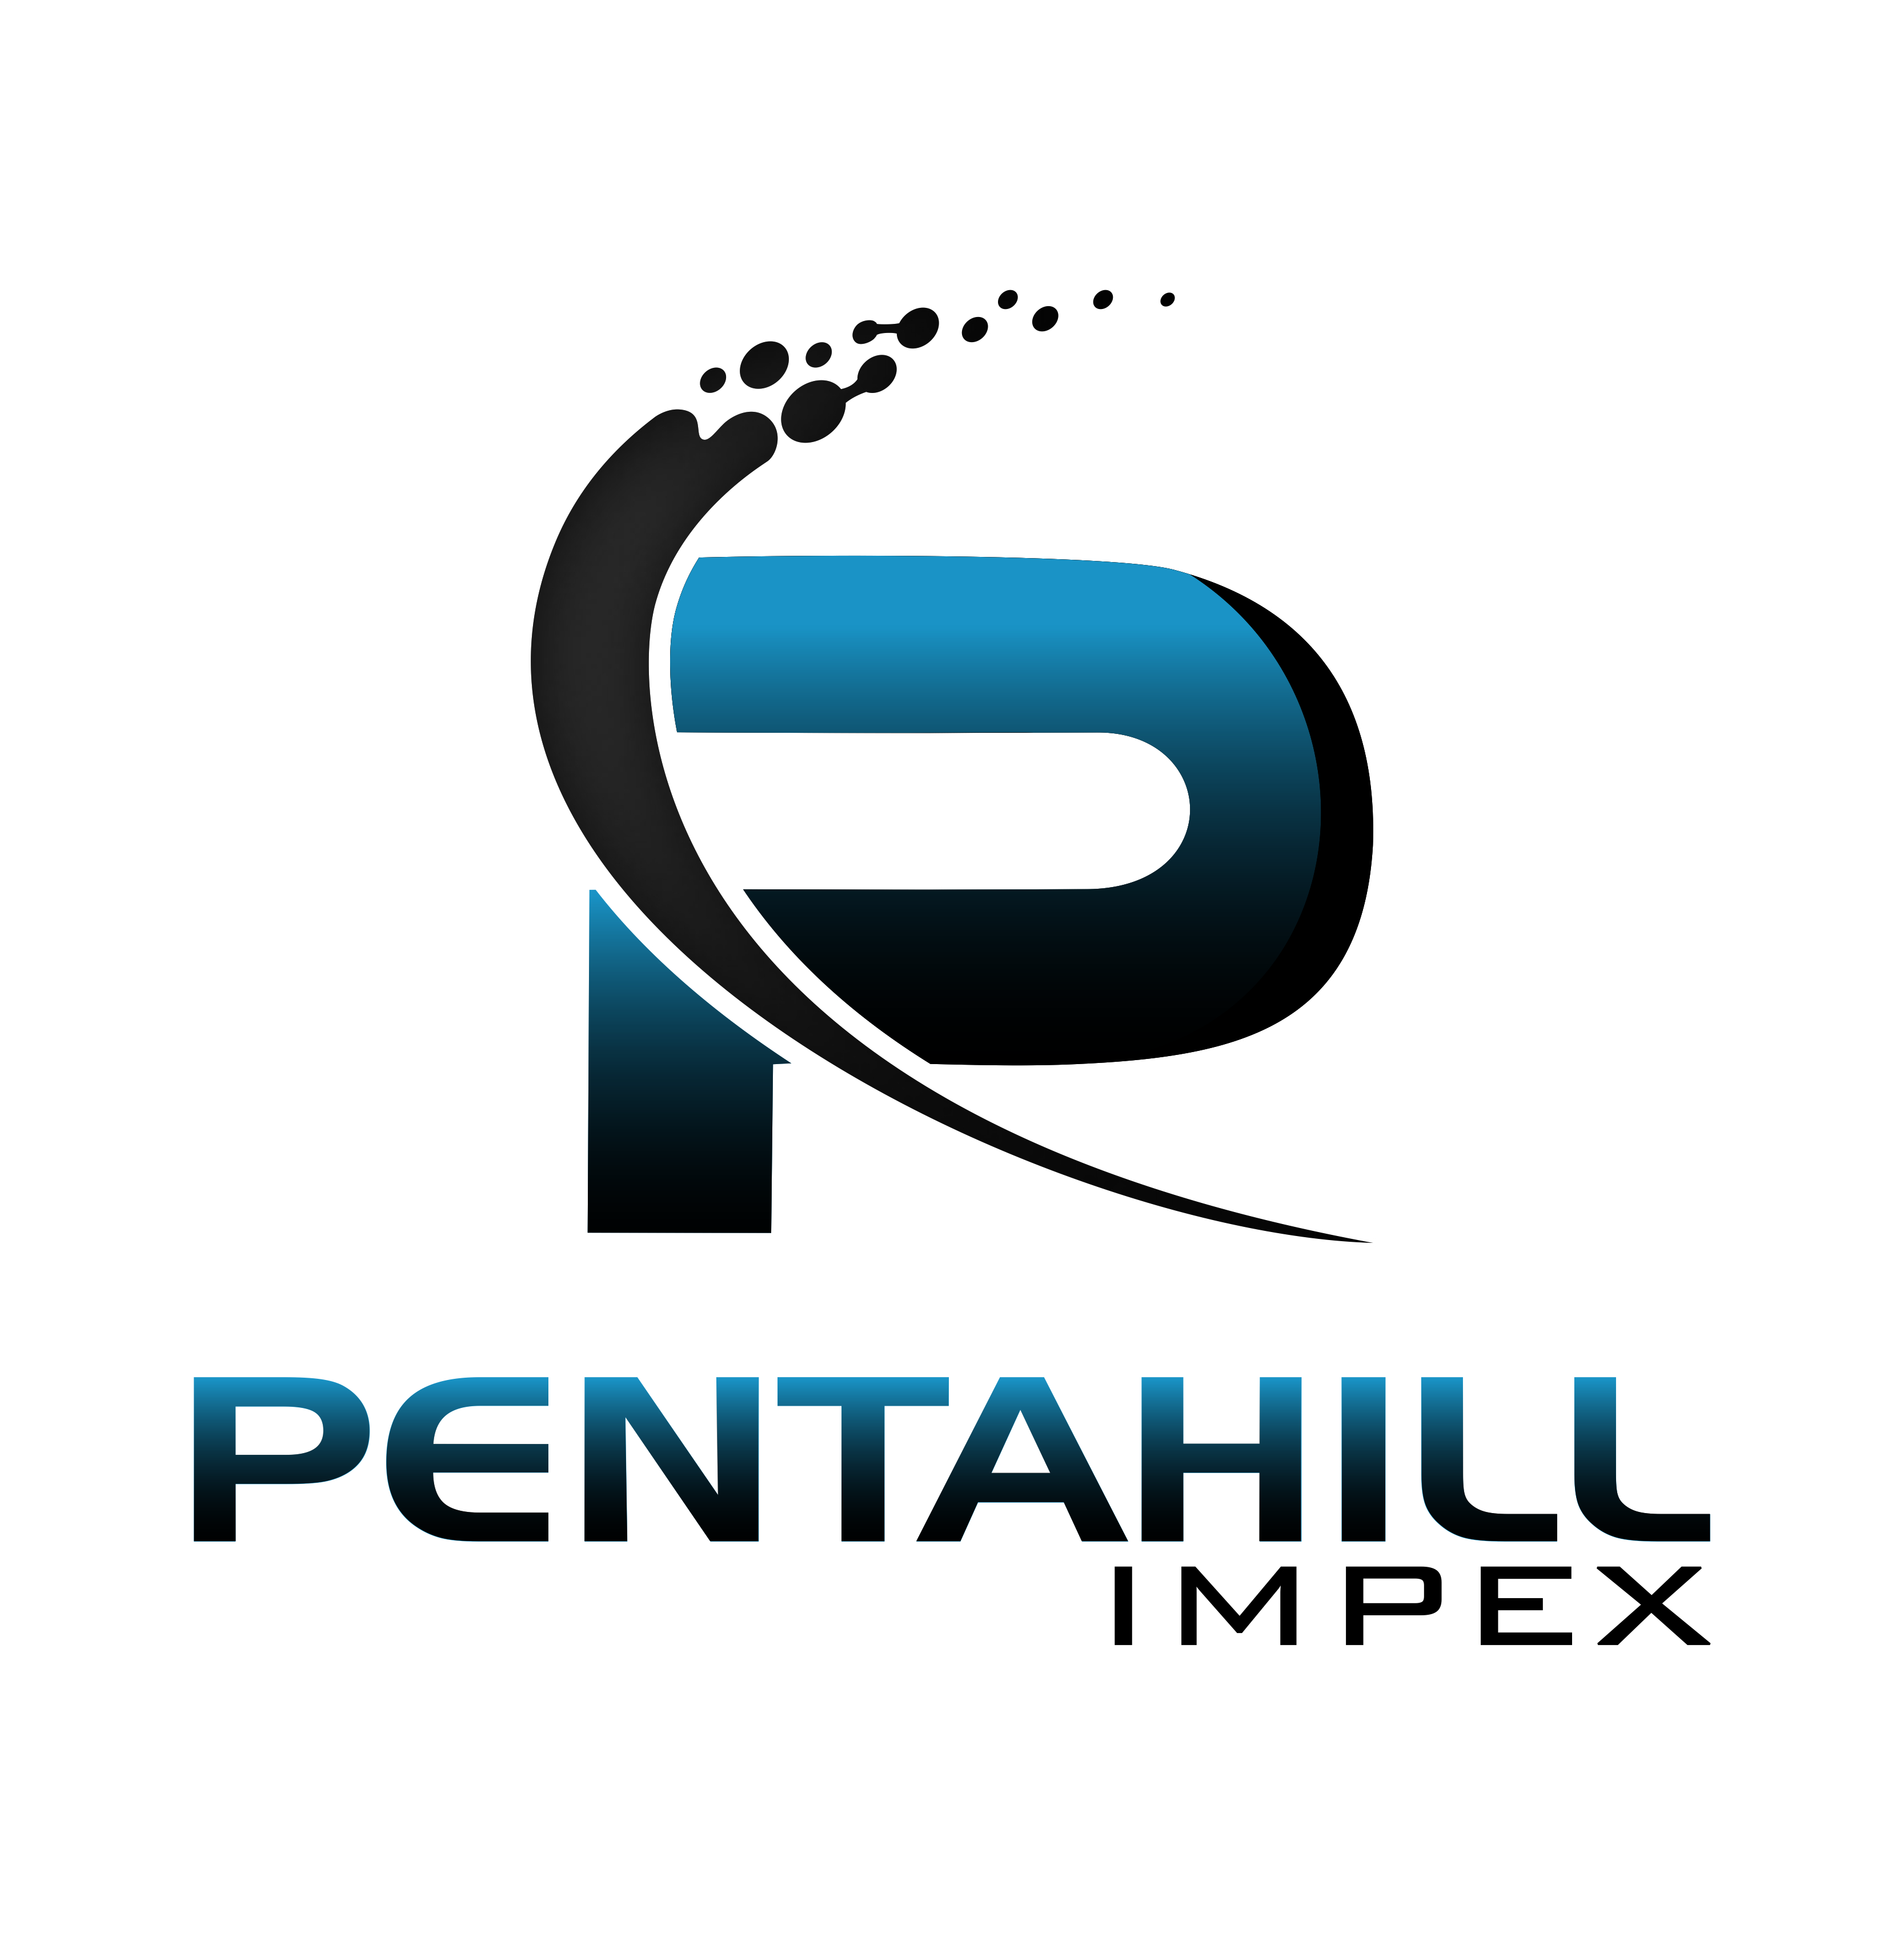 PENTA HILL IMPEX